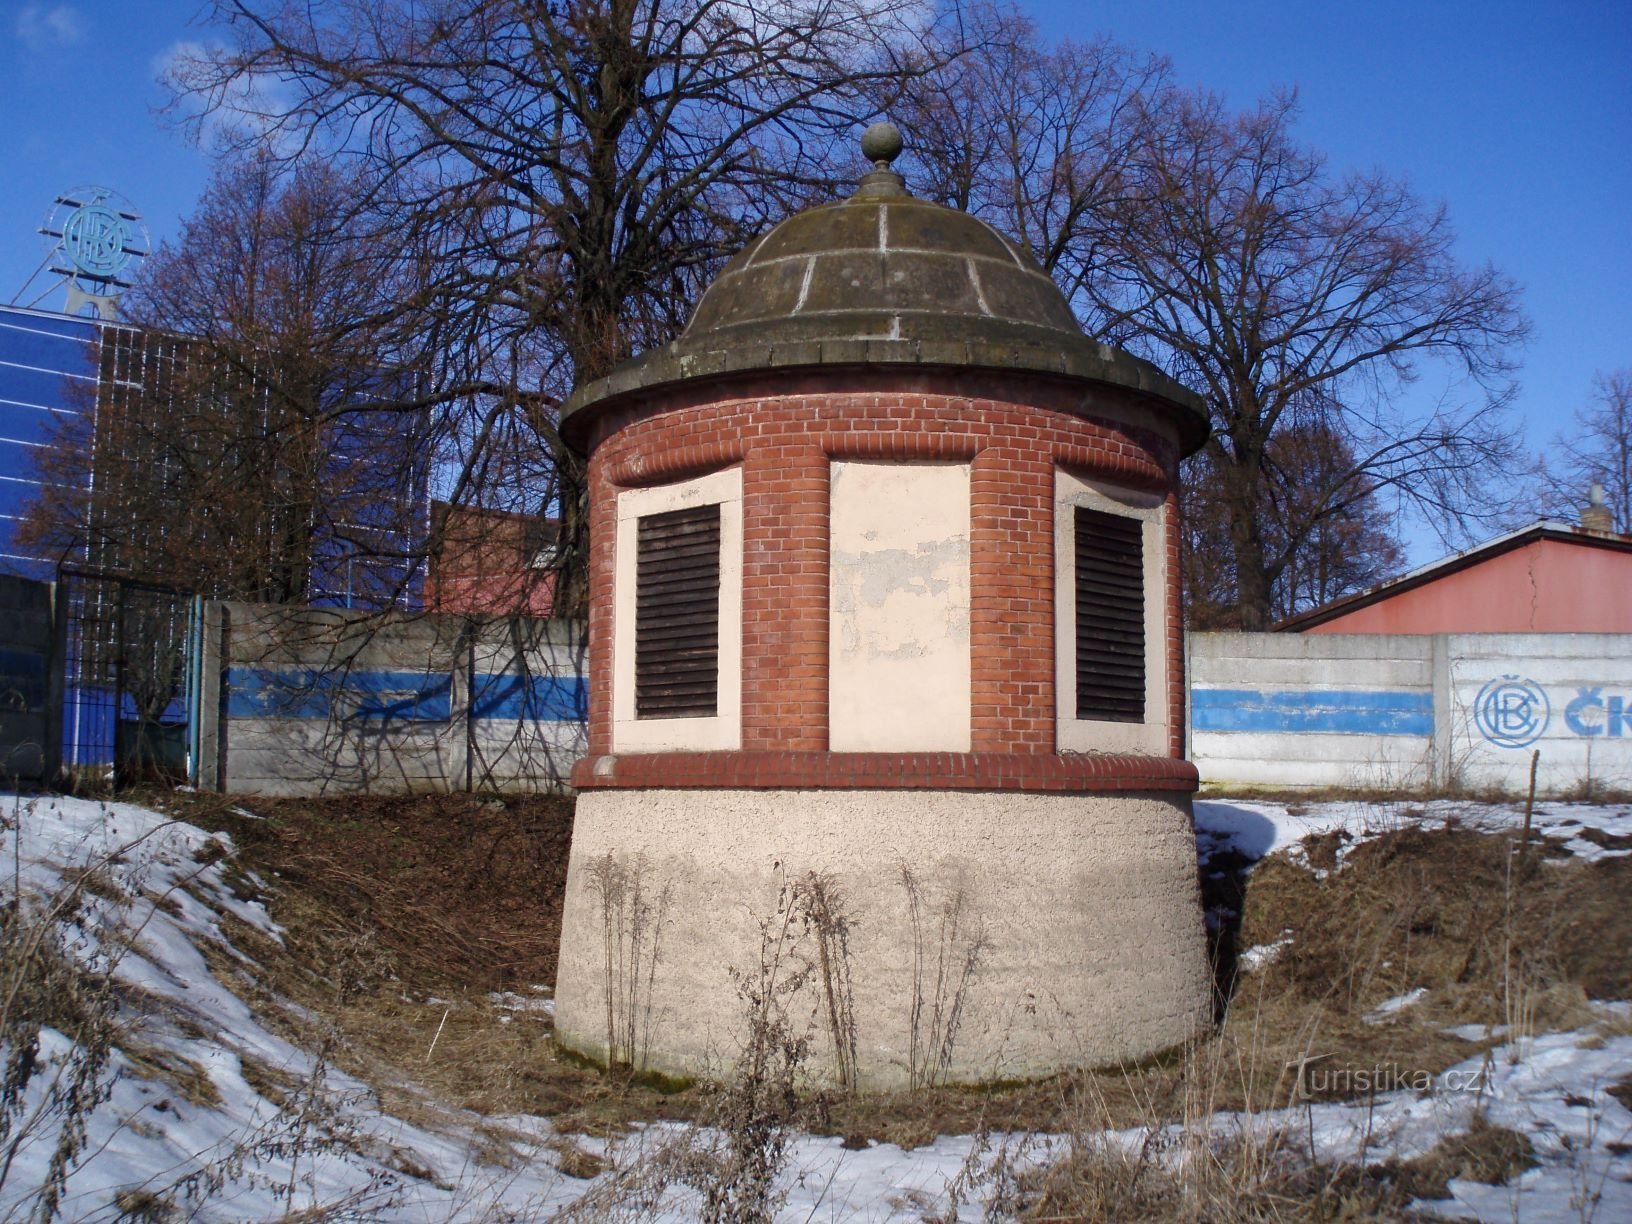 Тамбур над колишнім міським колодязем у Плотіште над Лабом (Градец Кралове, 27.2.2010)